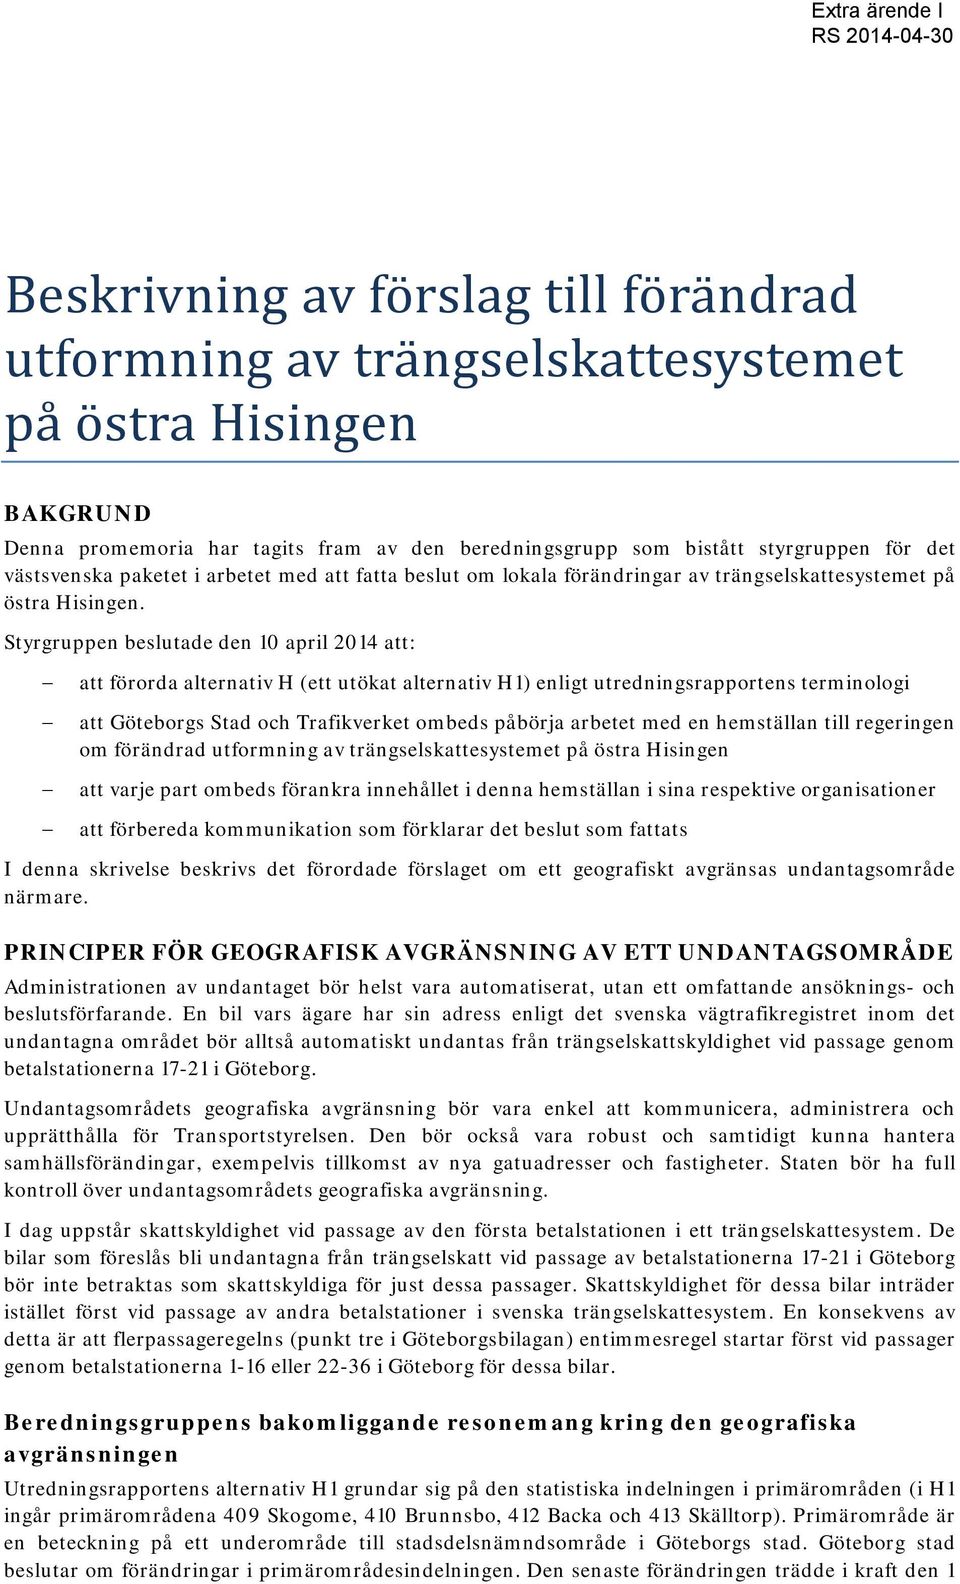 Styrgruppen beslutade den 10 april 2014 att: att förorda alternativ H (ett utökat alternativ H1) enligt utredningsrapportens terminologi att Göteborgs Stad och Trafikverket ombeds påbörja arbetet med